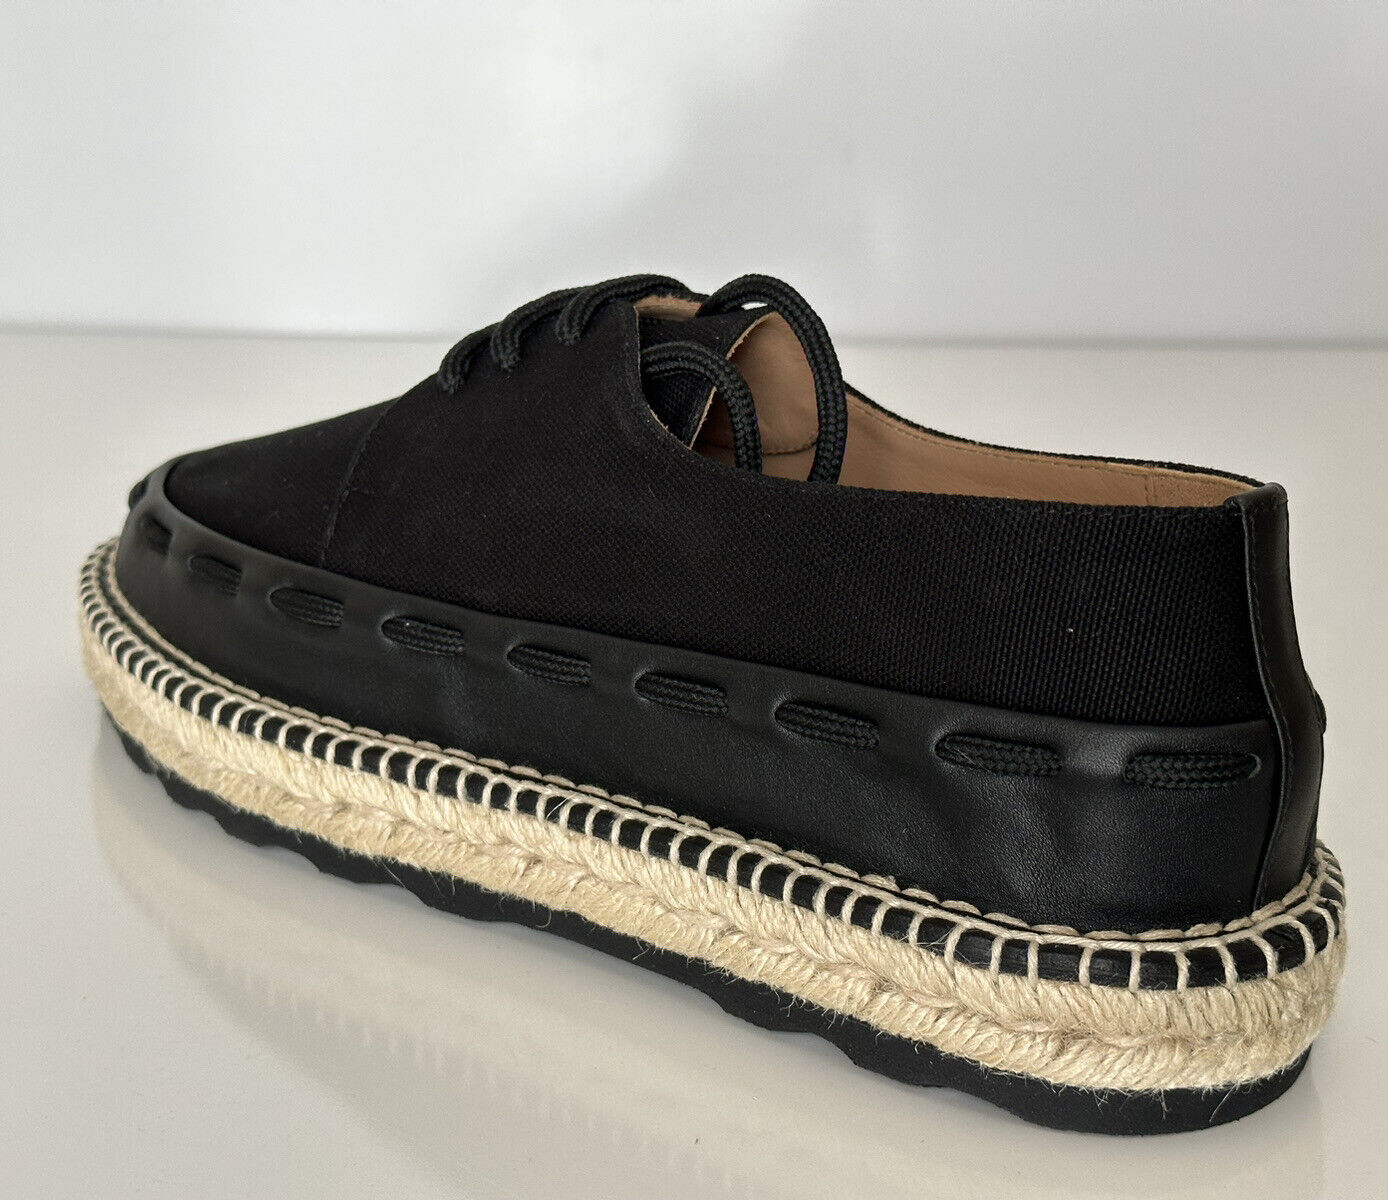 NIB $620 Bottega Veneta Men's Slip-on Espadrilles Shoes Black 10 US (43) 578267